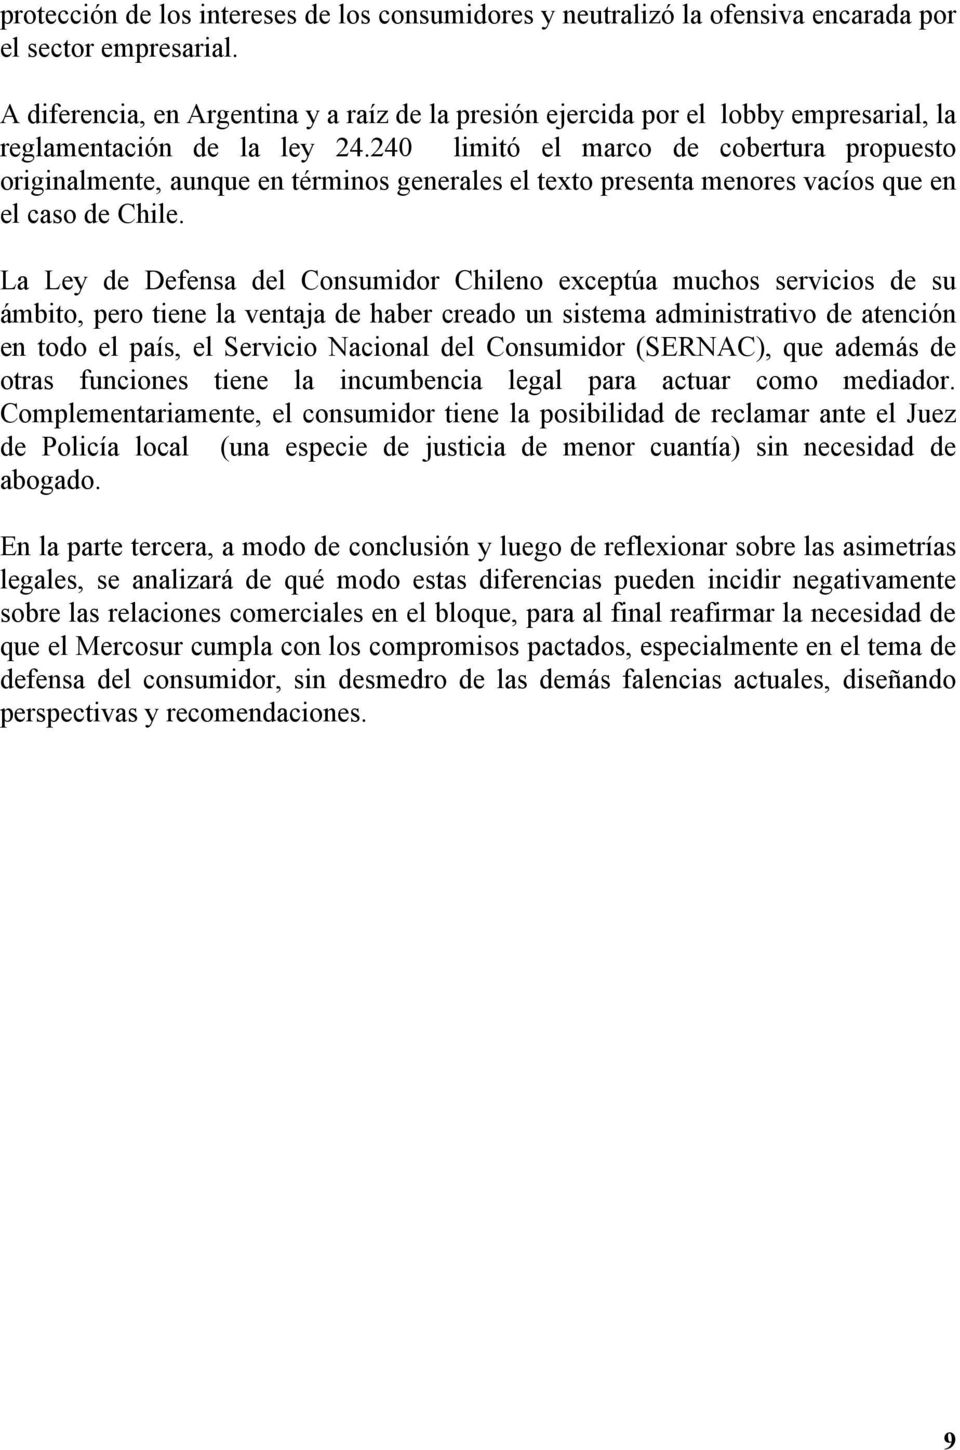 240 limitó el marco de cobertura propuesto originalmente, aunque en términos generales el texto presenta menores vacíos que en el caso de Chile.